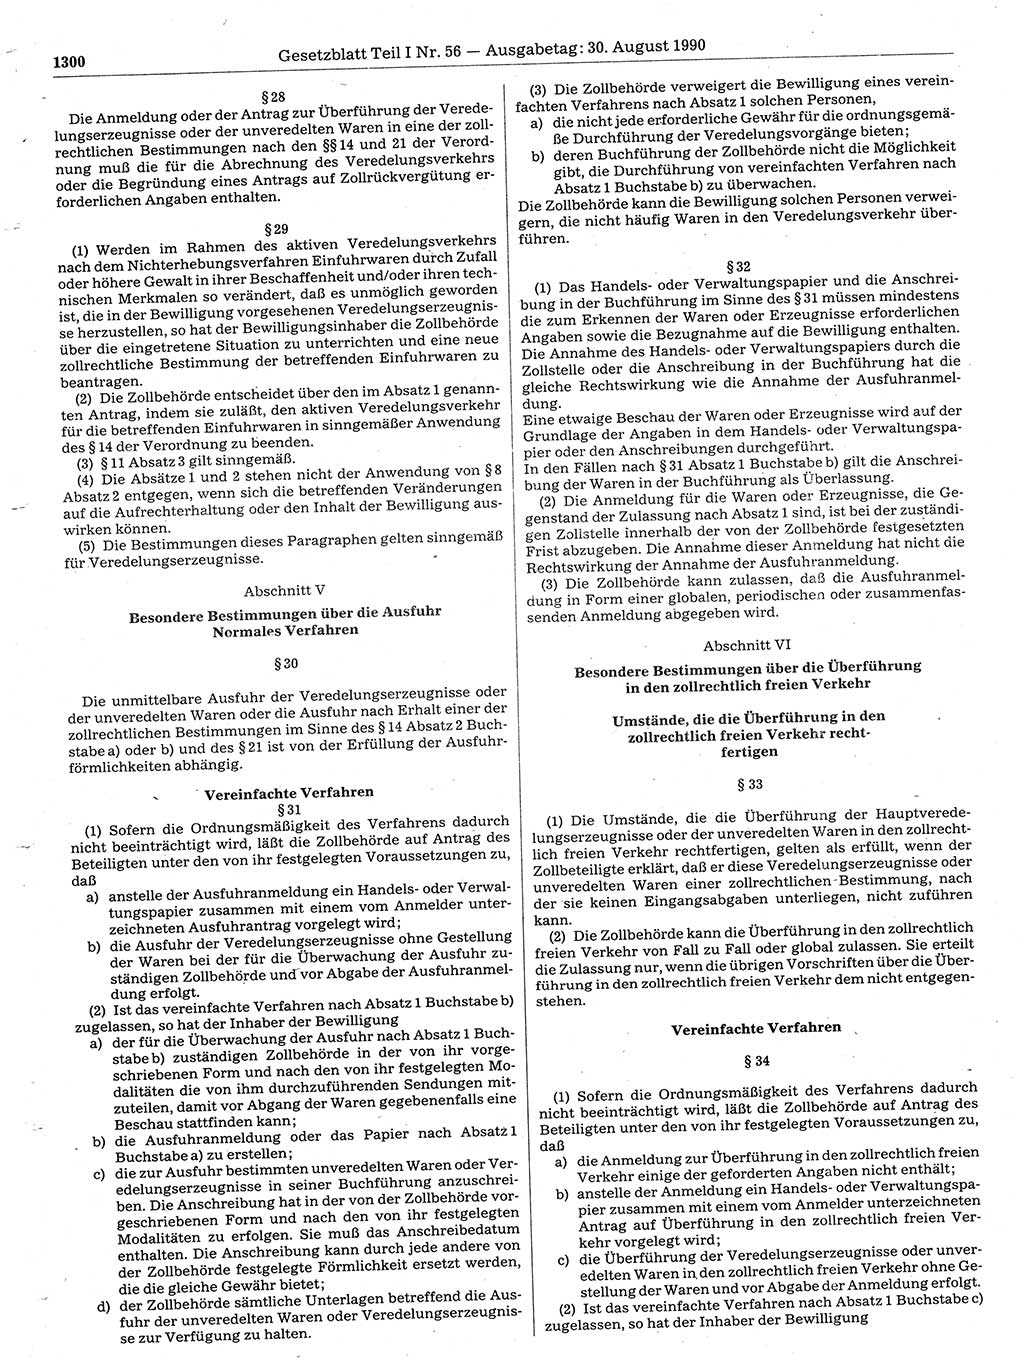 Gesetzblatt (GBl.) der Deutschen Demokratischen Republik (DDR) Teil Ⅰ 1990, Seite 1300 (GBl. DDR Ⅰ 1990, S. 1300)